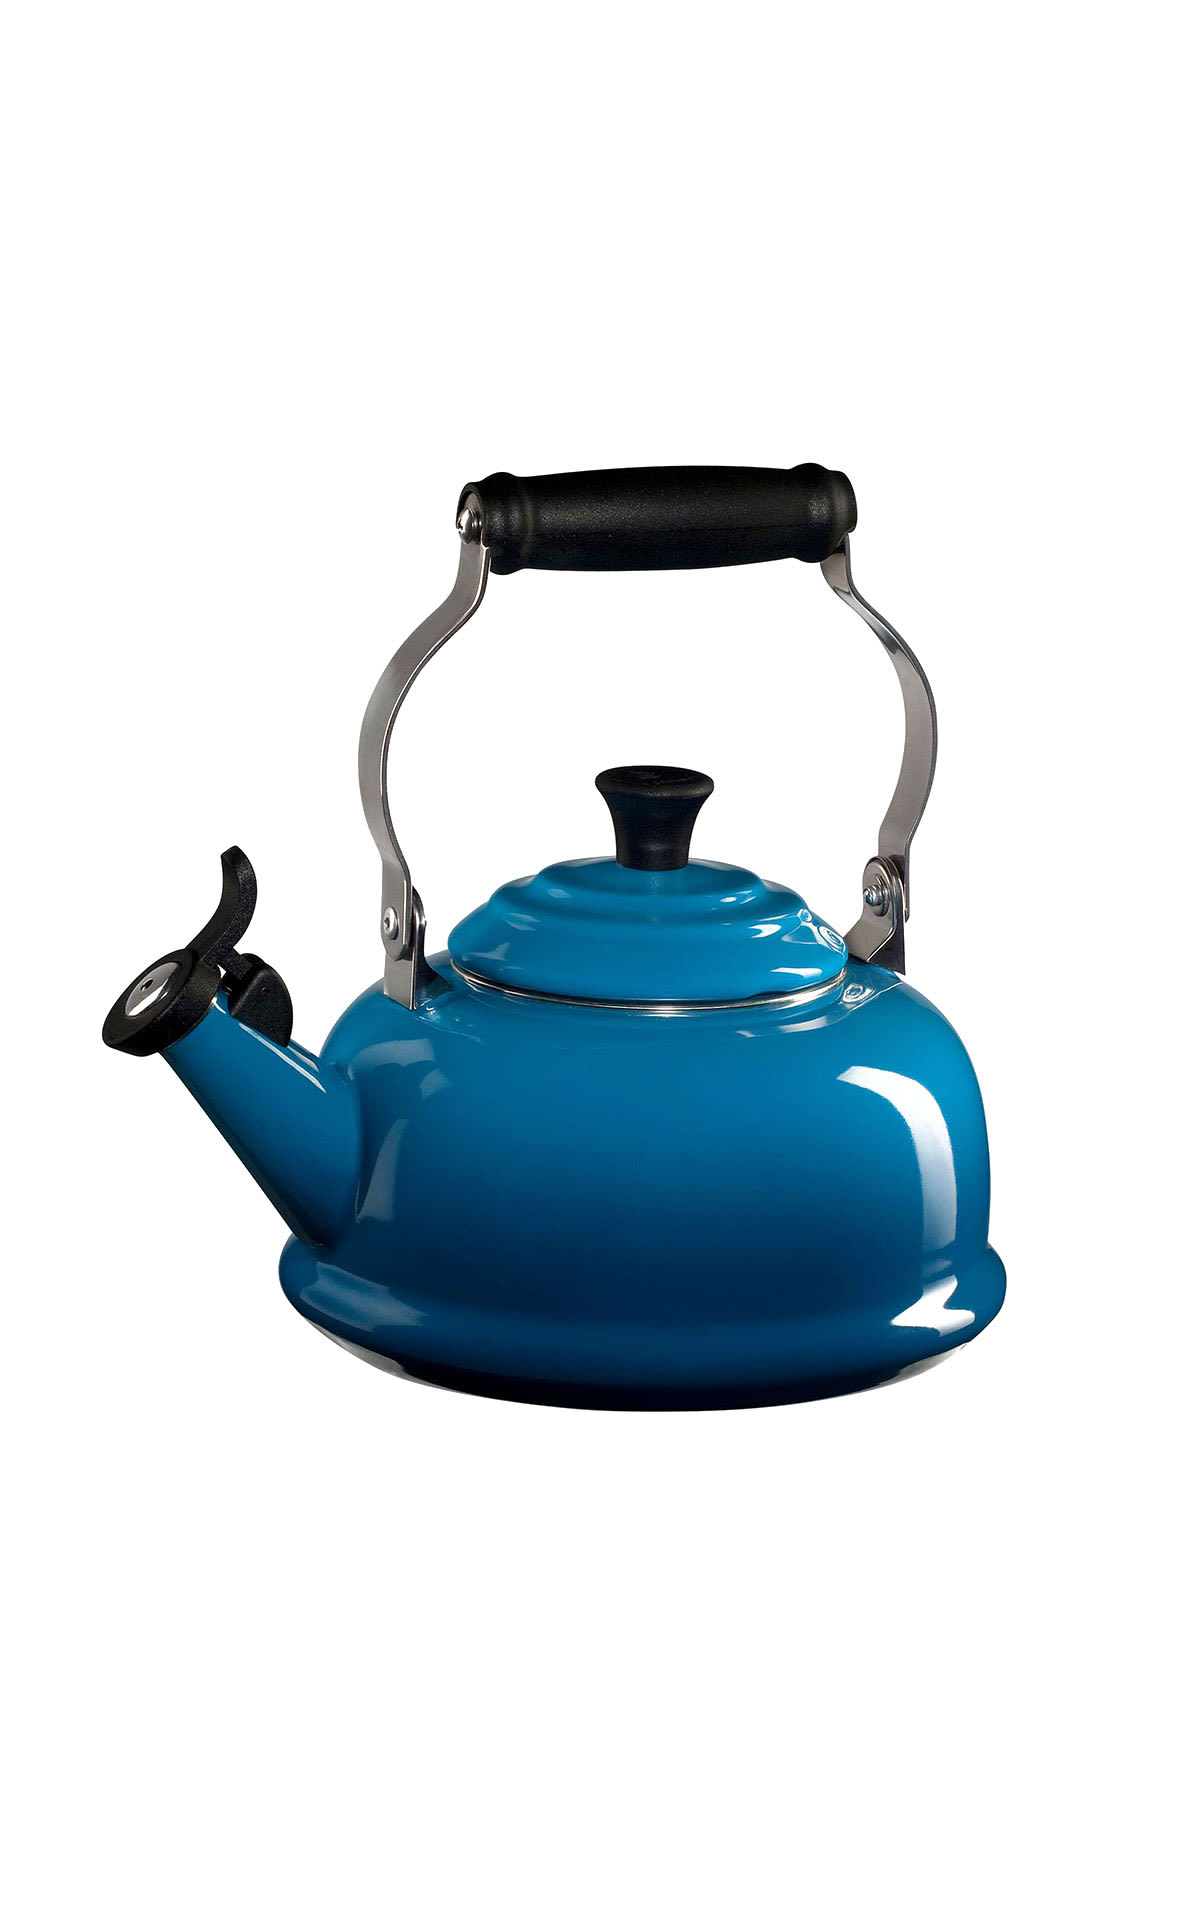 blue traditional teapot Le Creuset